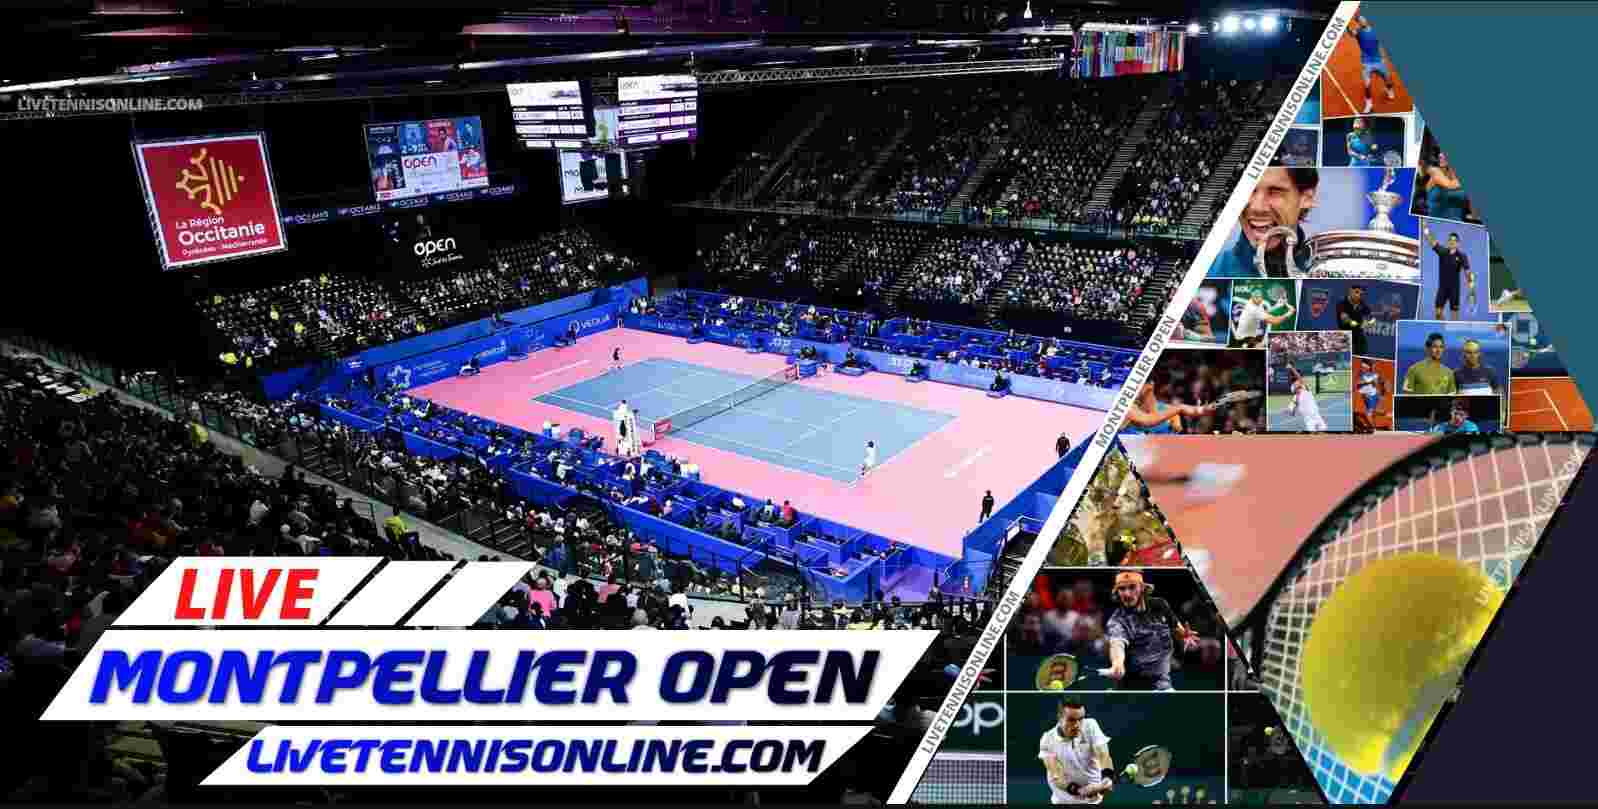 montpellier-open-tennis-live-online-stream